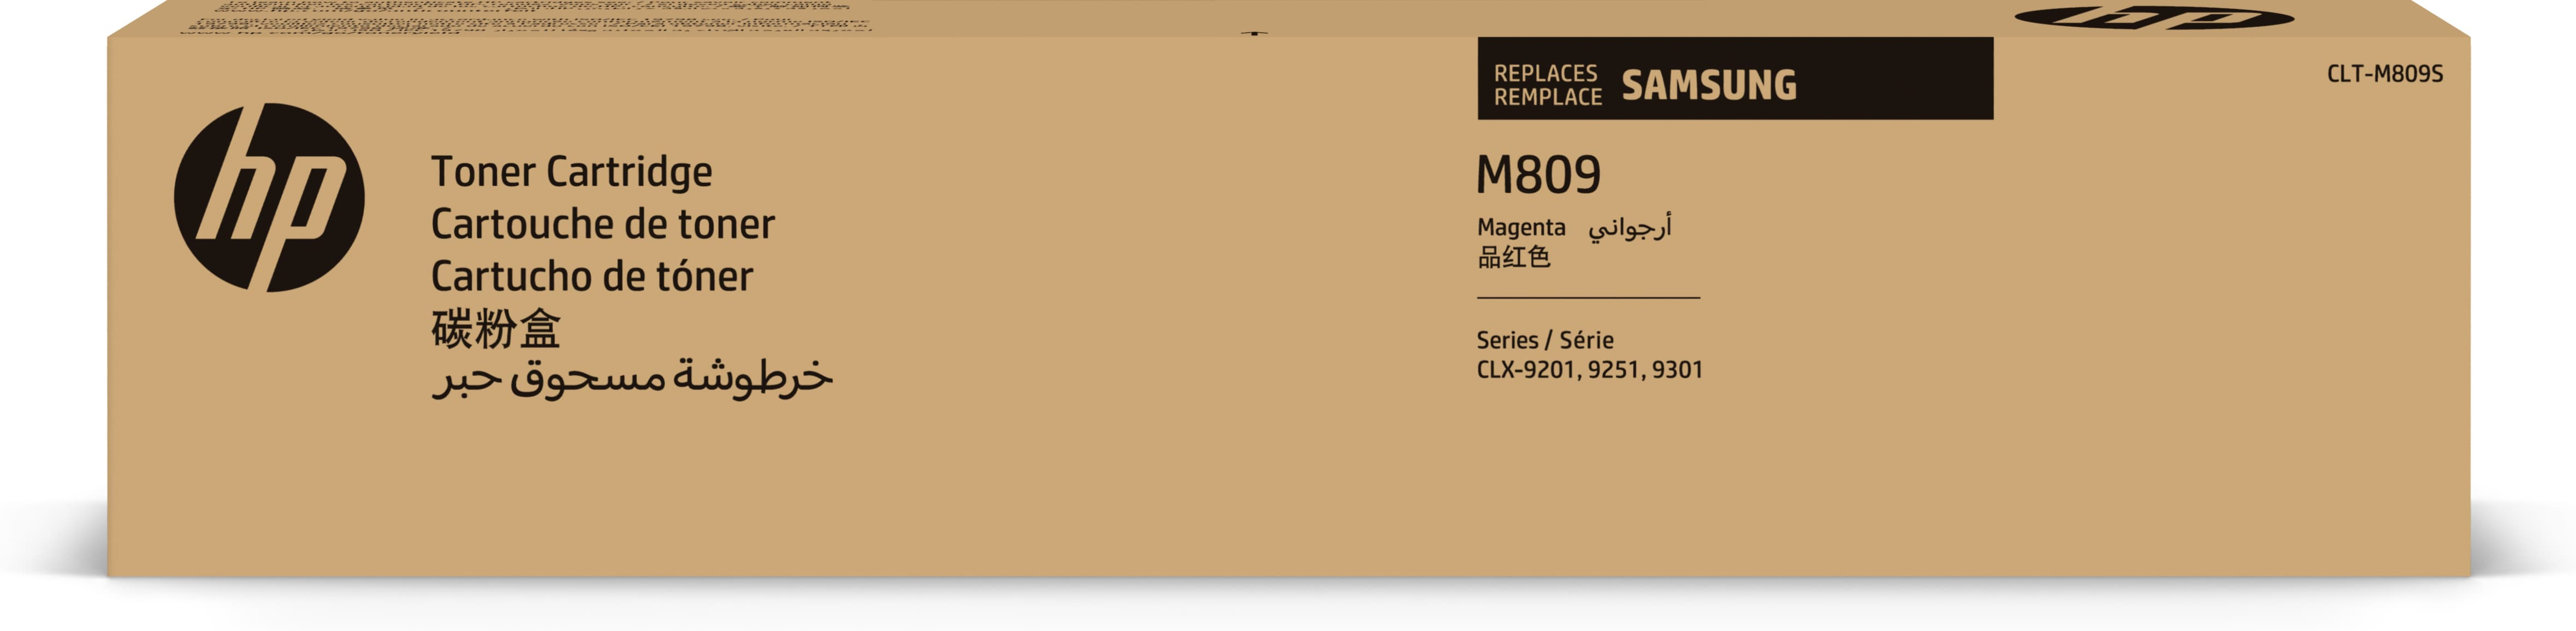 Samsung Cartuccia toner magenta originale HP CLT-M809S [SS649A]